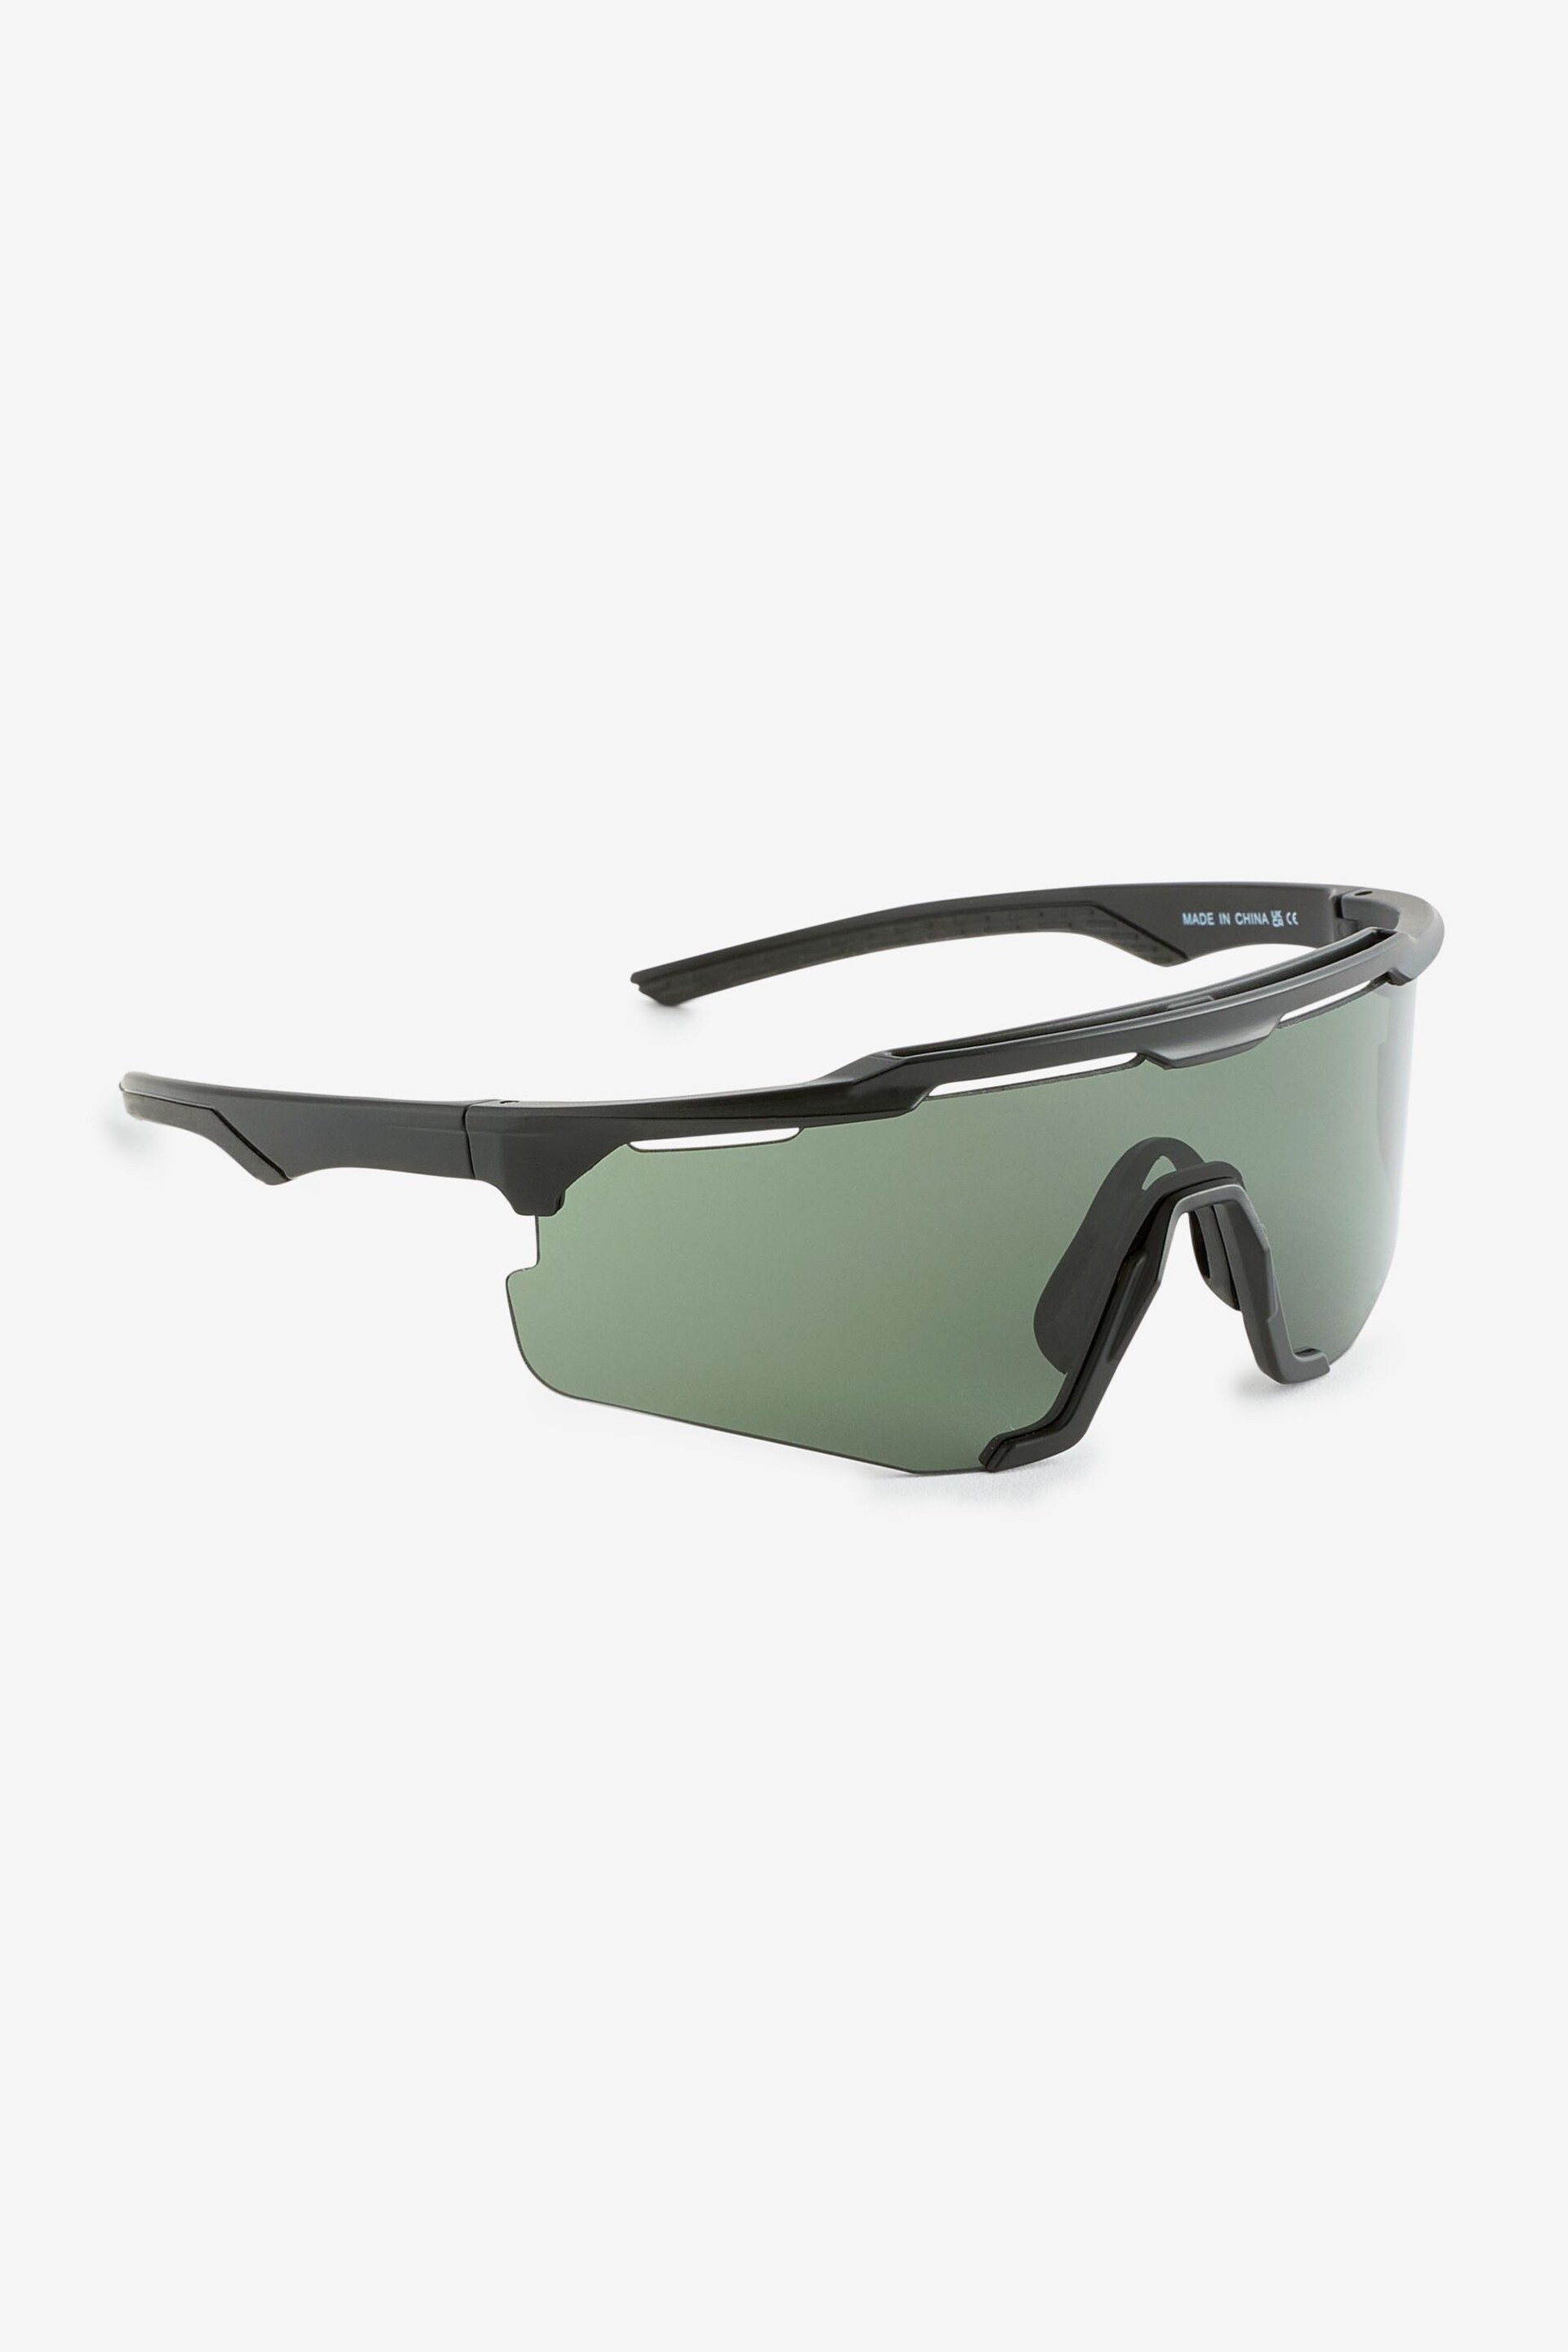 Black Sport Visor Sunglasses - Image 4 of 4